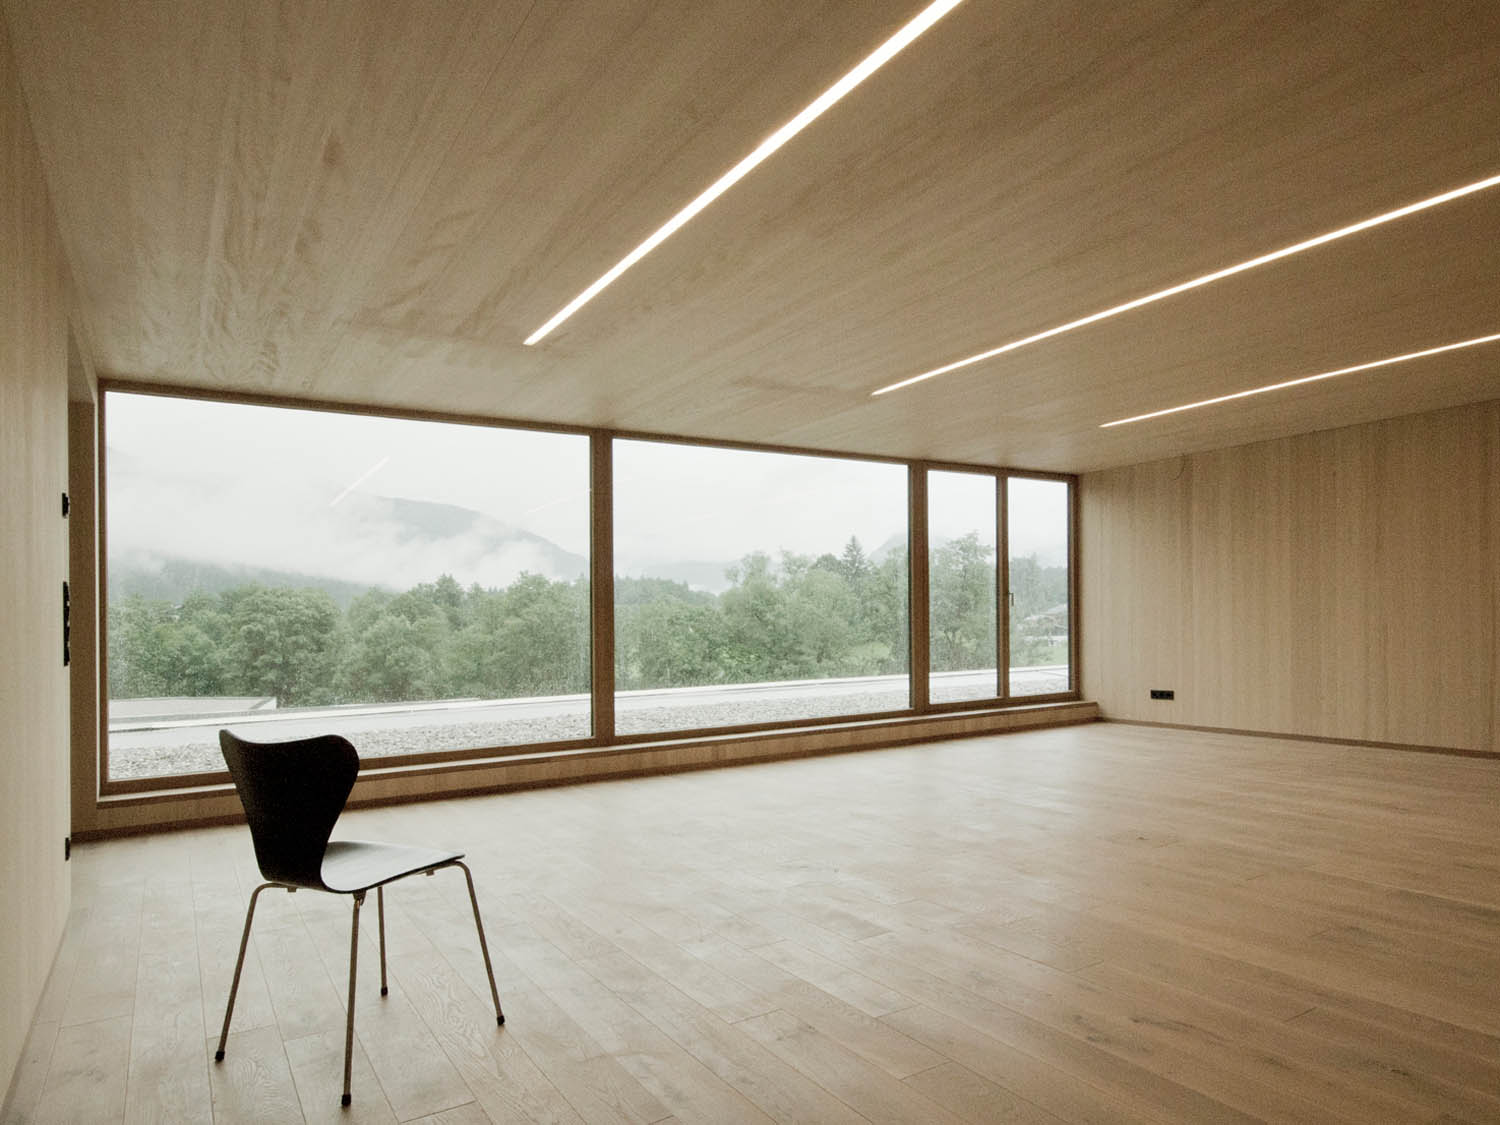 Tischlerei Trixl - Leerer Raum mit Holzboden und Wänden, Zimmerei Meiberger